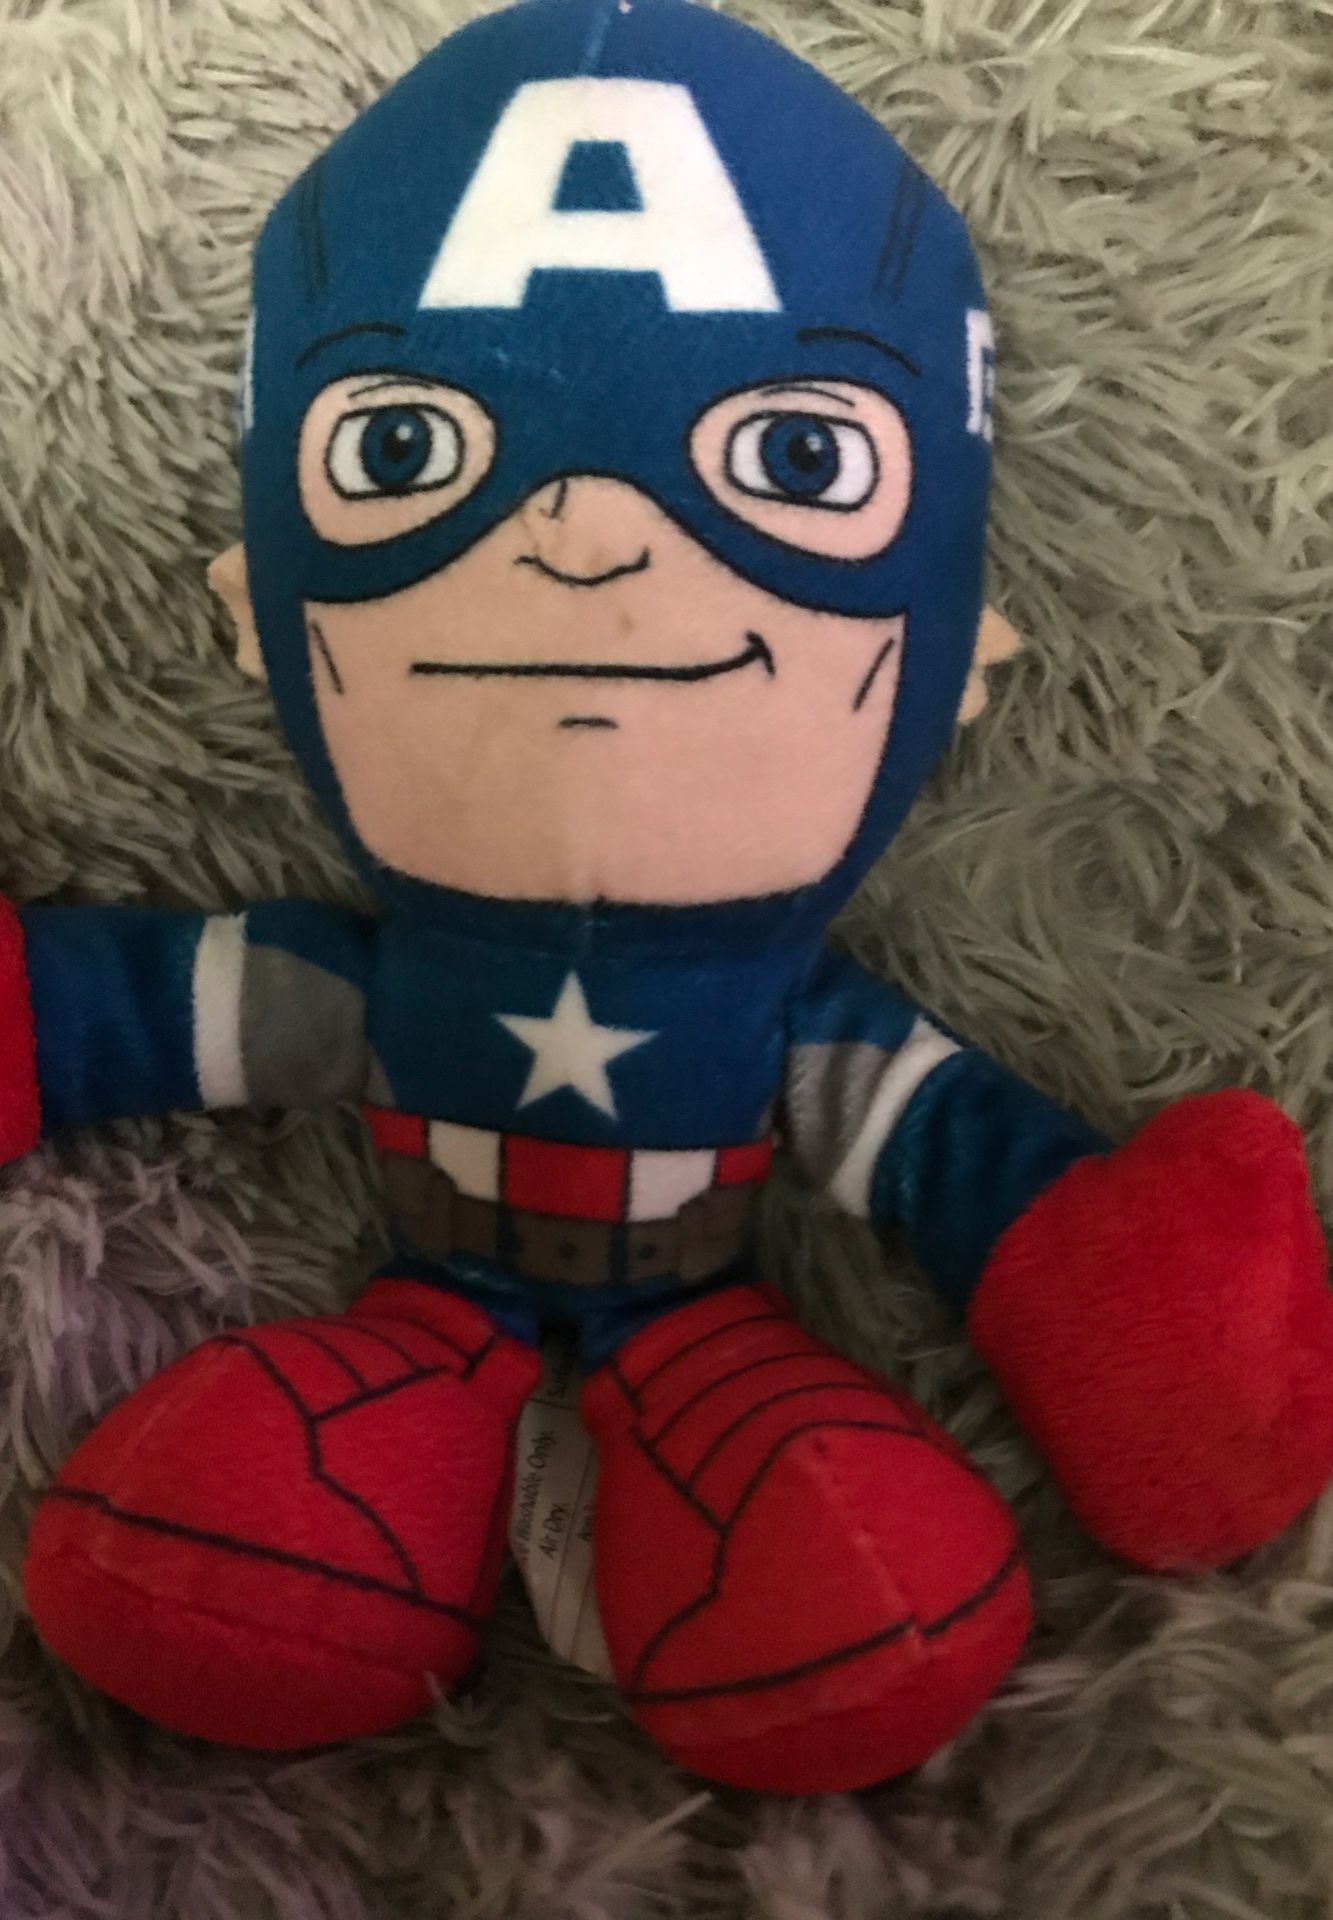 8” Marvels captain America stuffed animal $4